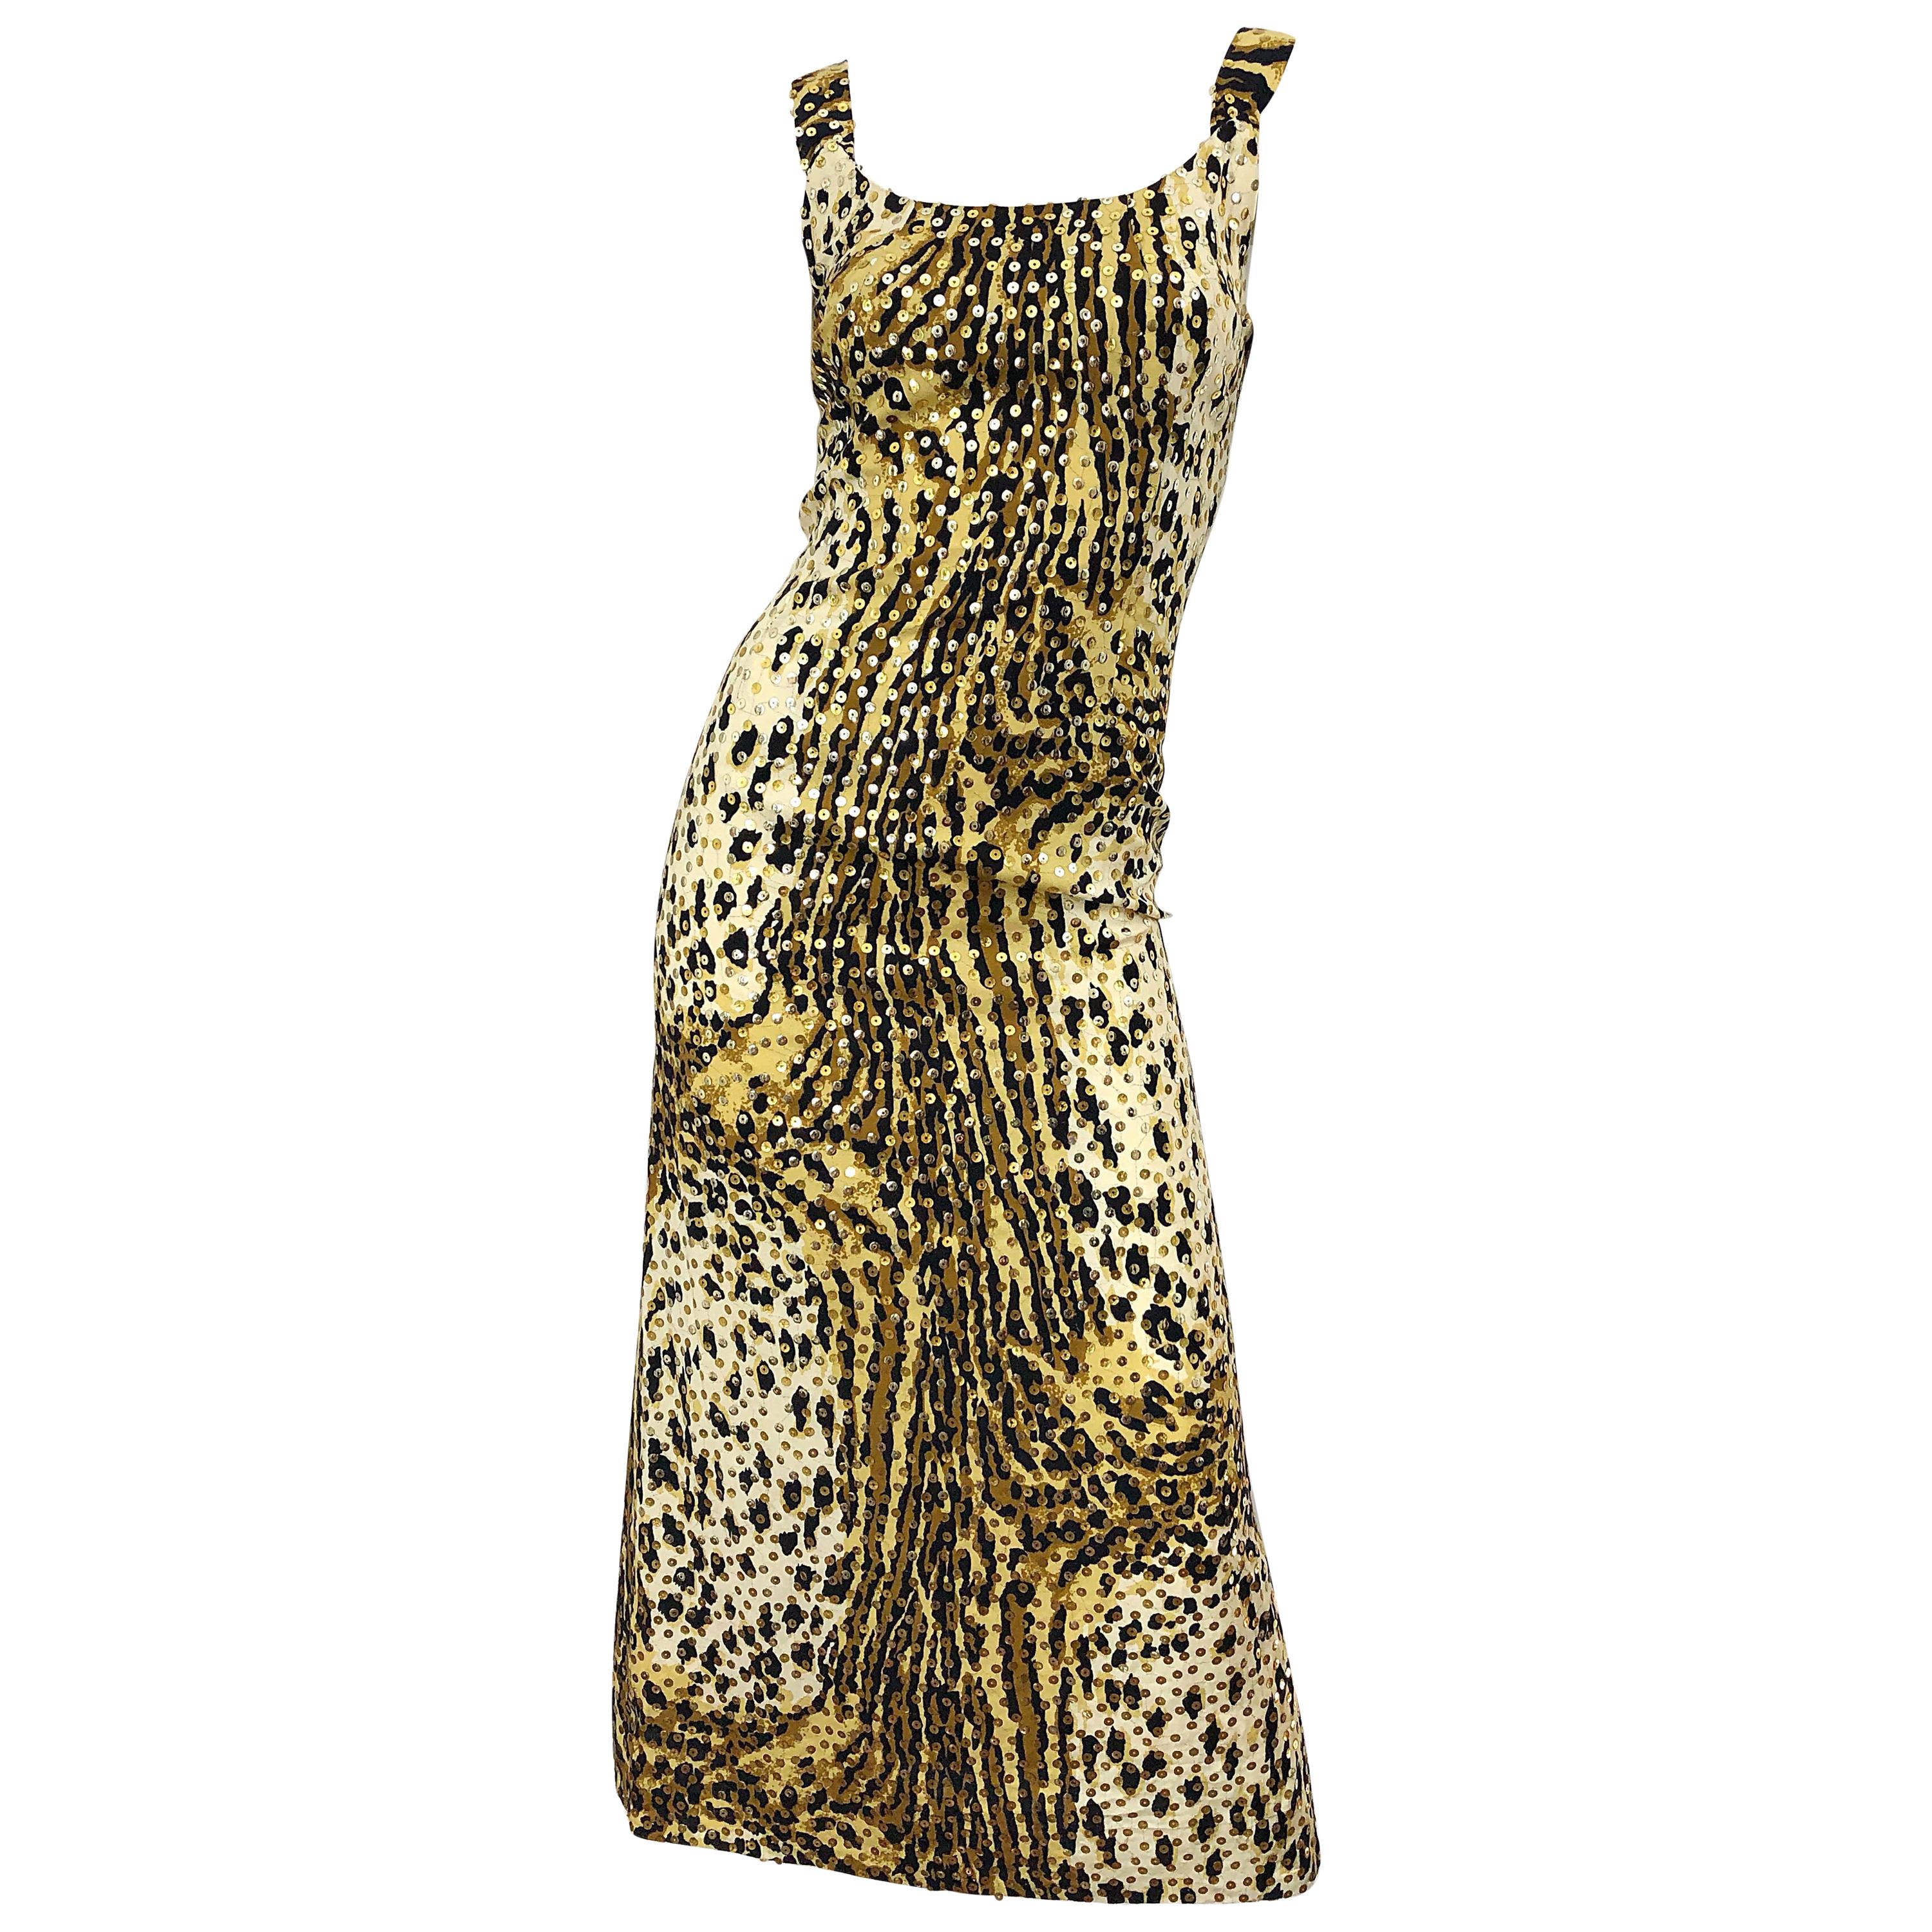 Mollie Parnis 1970s Leopard Cheetah Print Sequined Vintage 70s Cotton Midi Dress